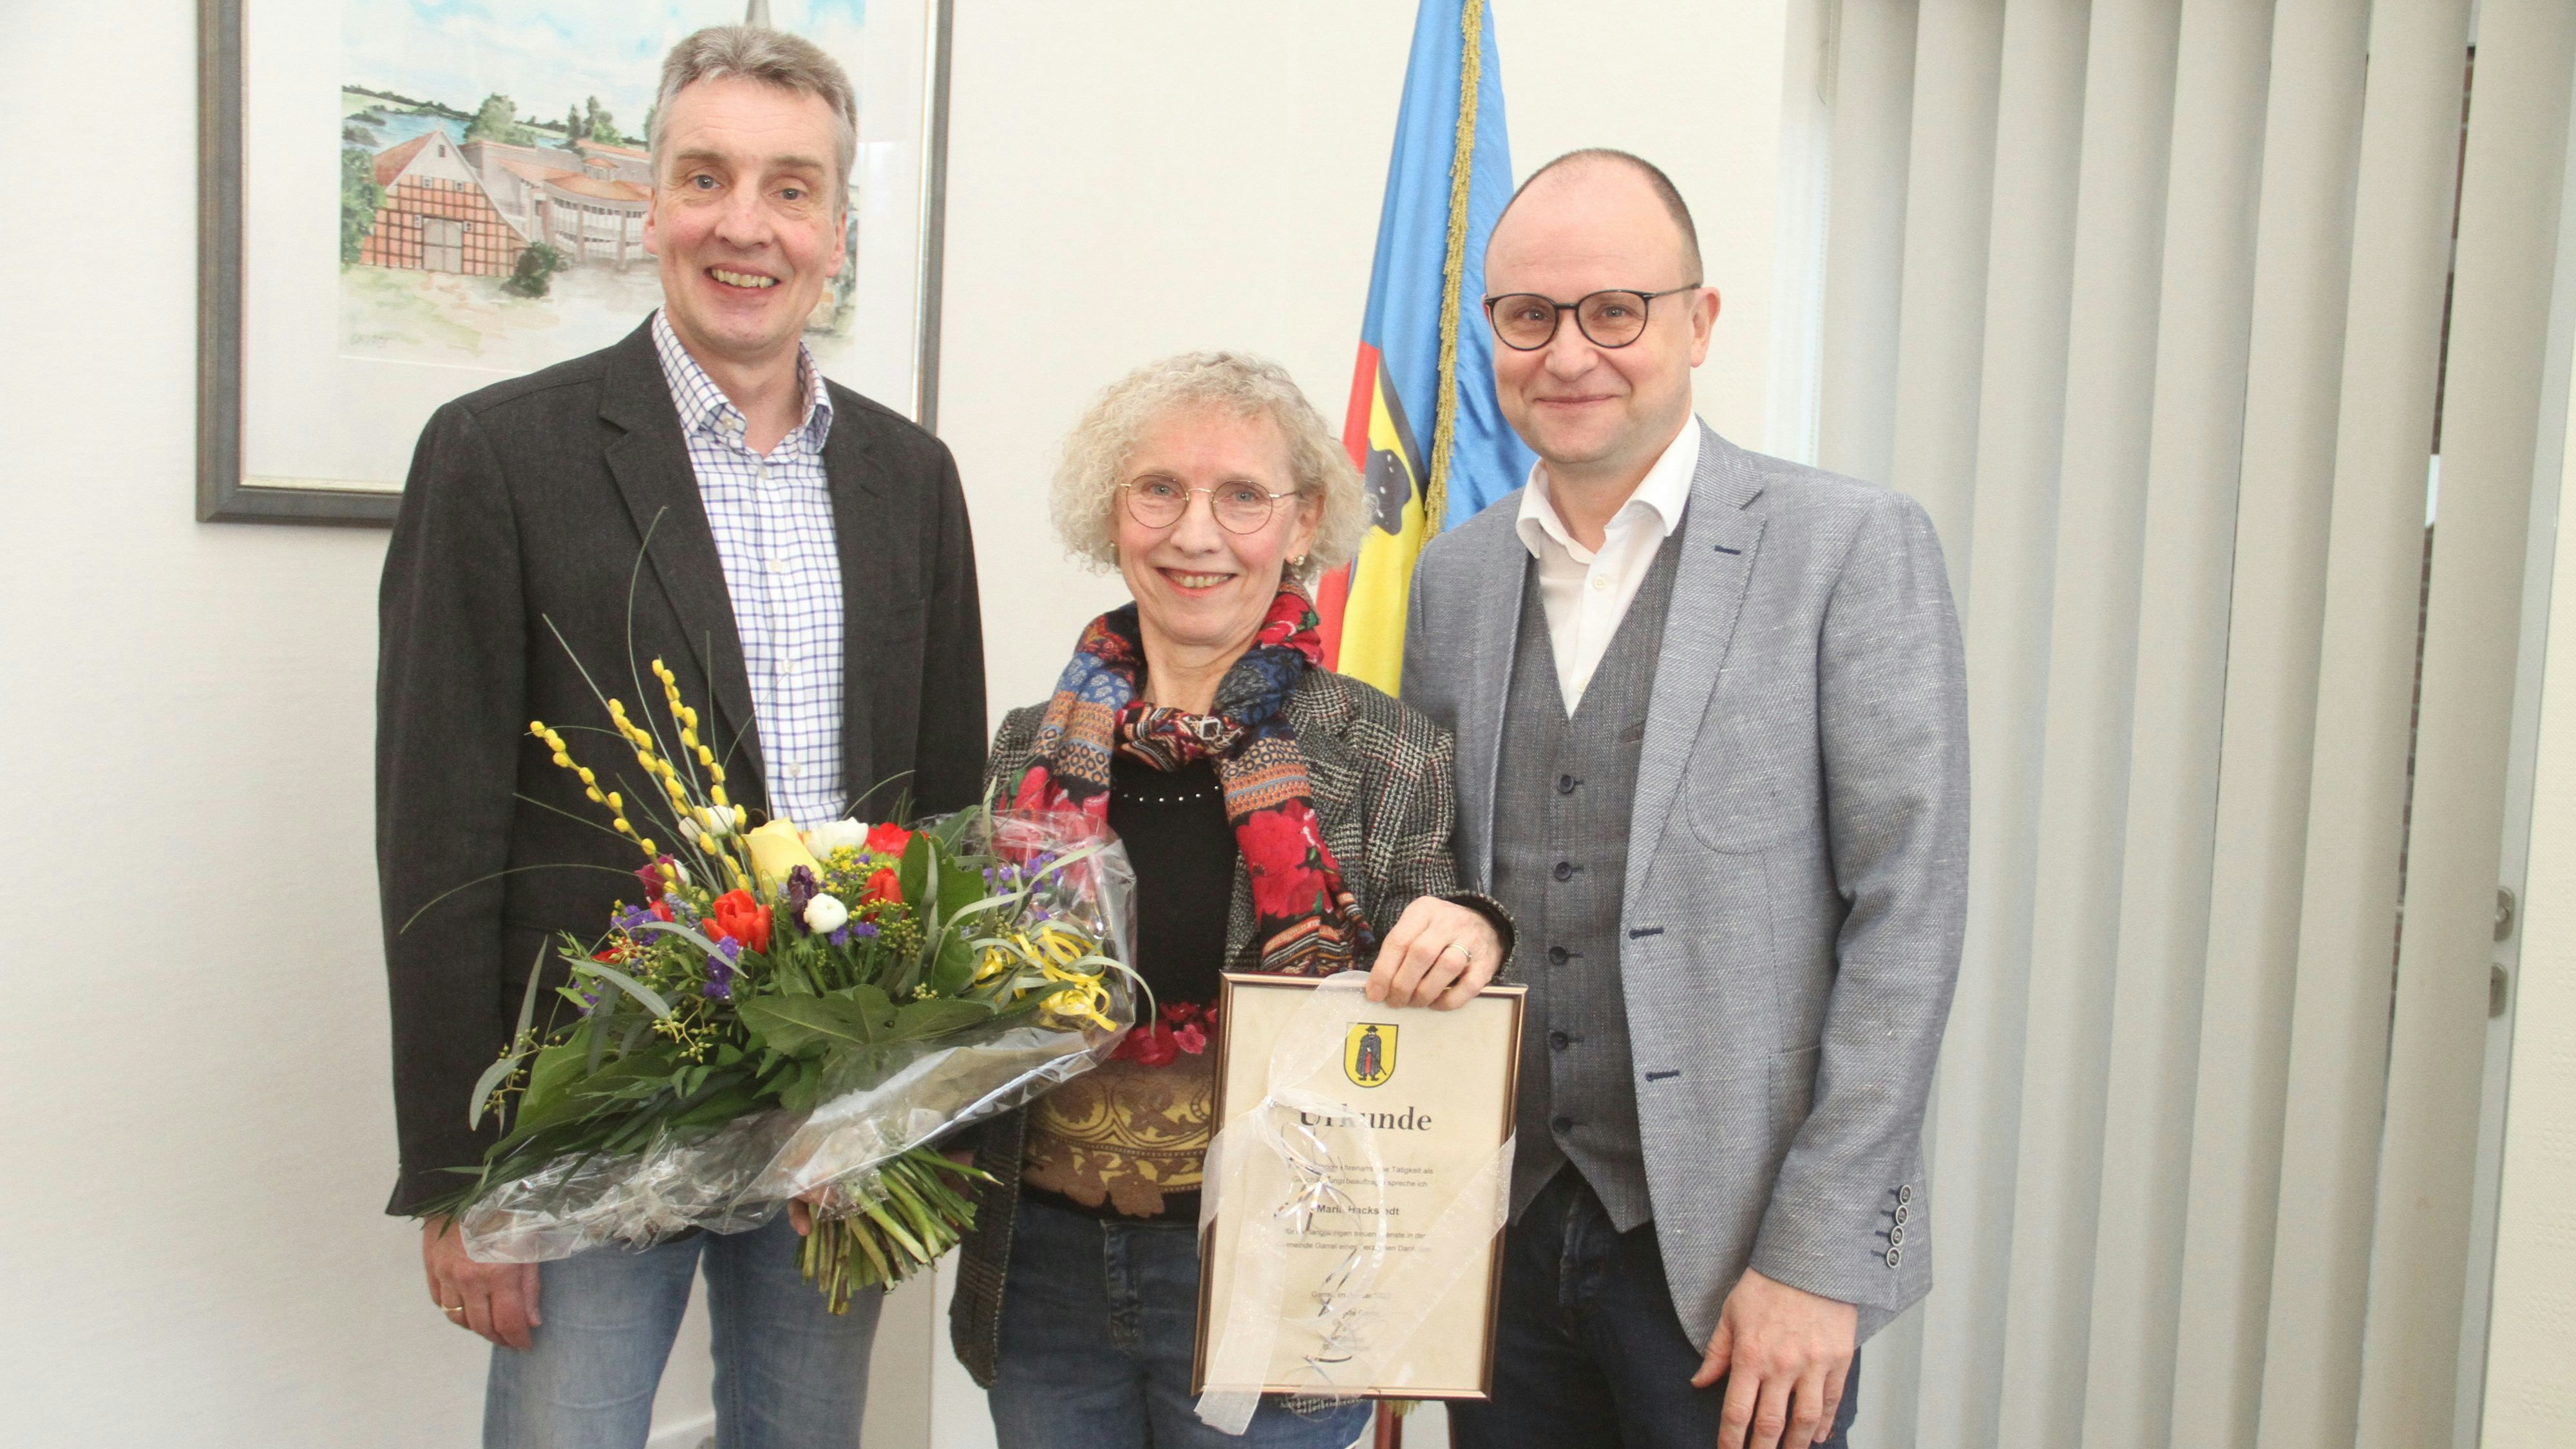 Seit 25 Jahren im Amt: Erster Gemeinderat Karl-Heinz Focken (links) und Bürgermeister Thomas Höffmann gratulieren der Gleichstellungsbeauftragten Maria Hackstedt. Foto: Danke